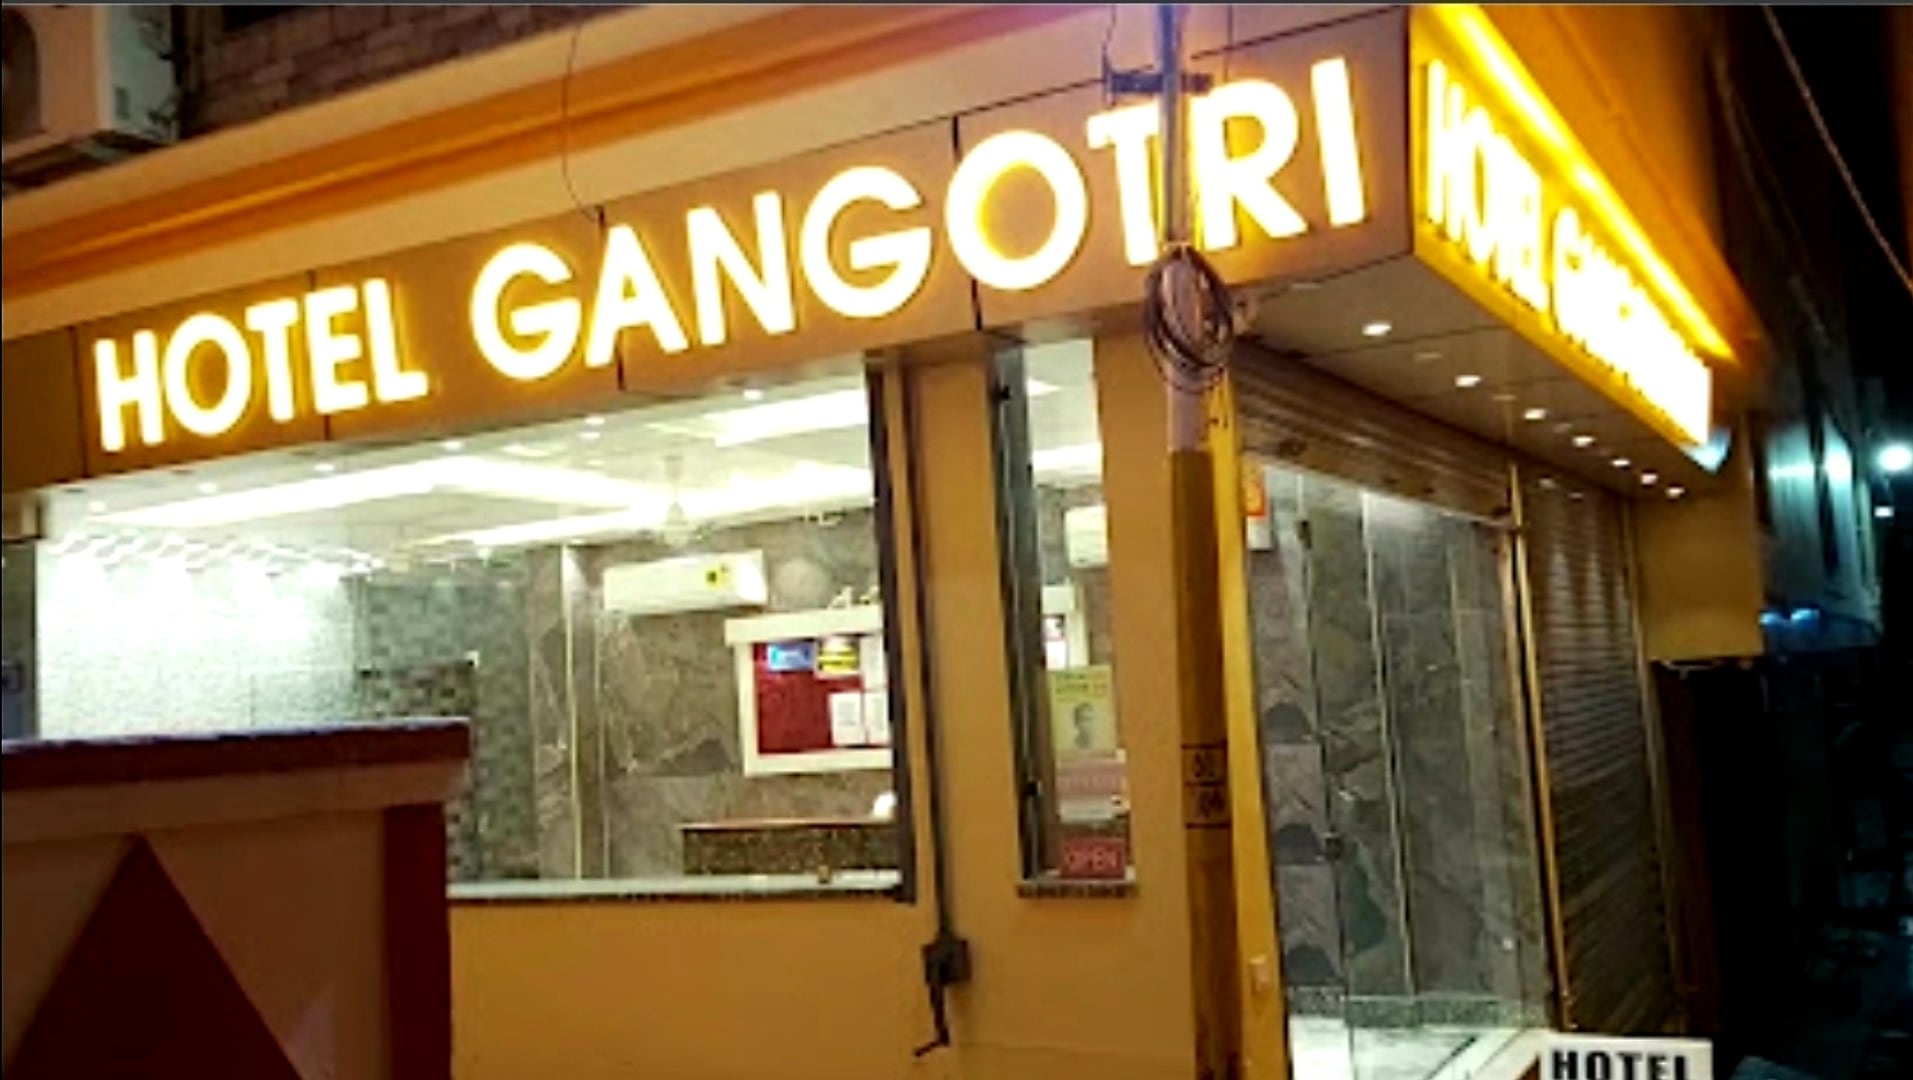 Hotel Gangotri Plaza